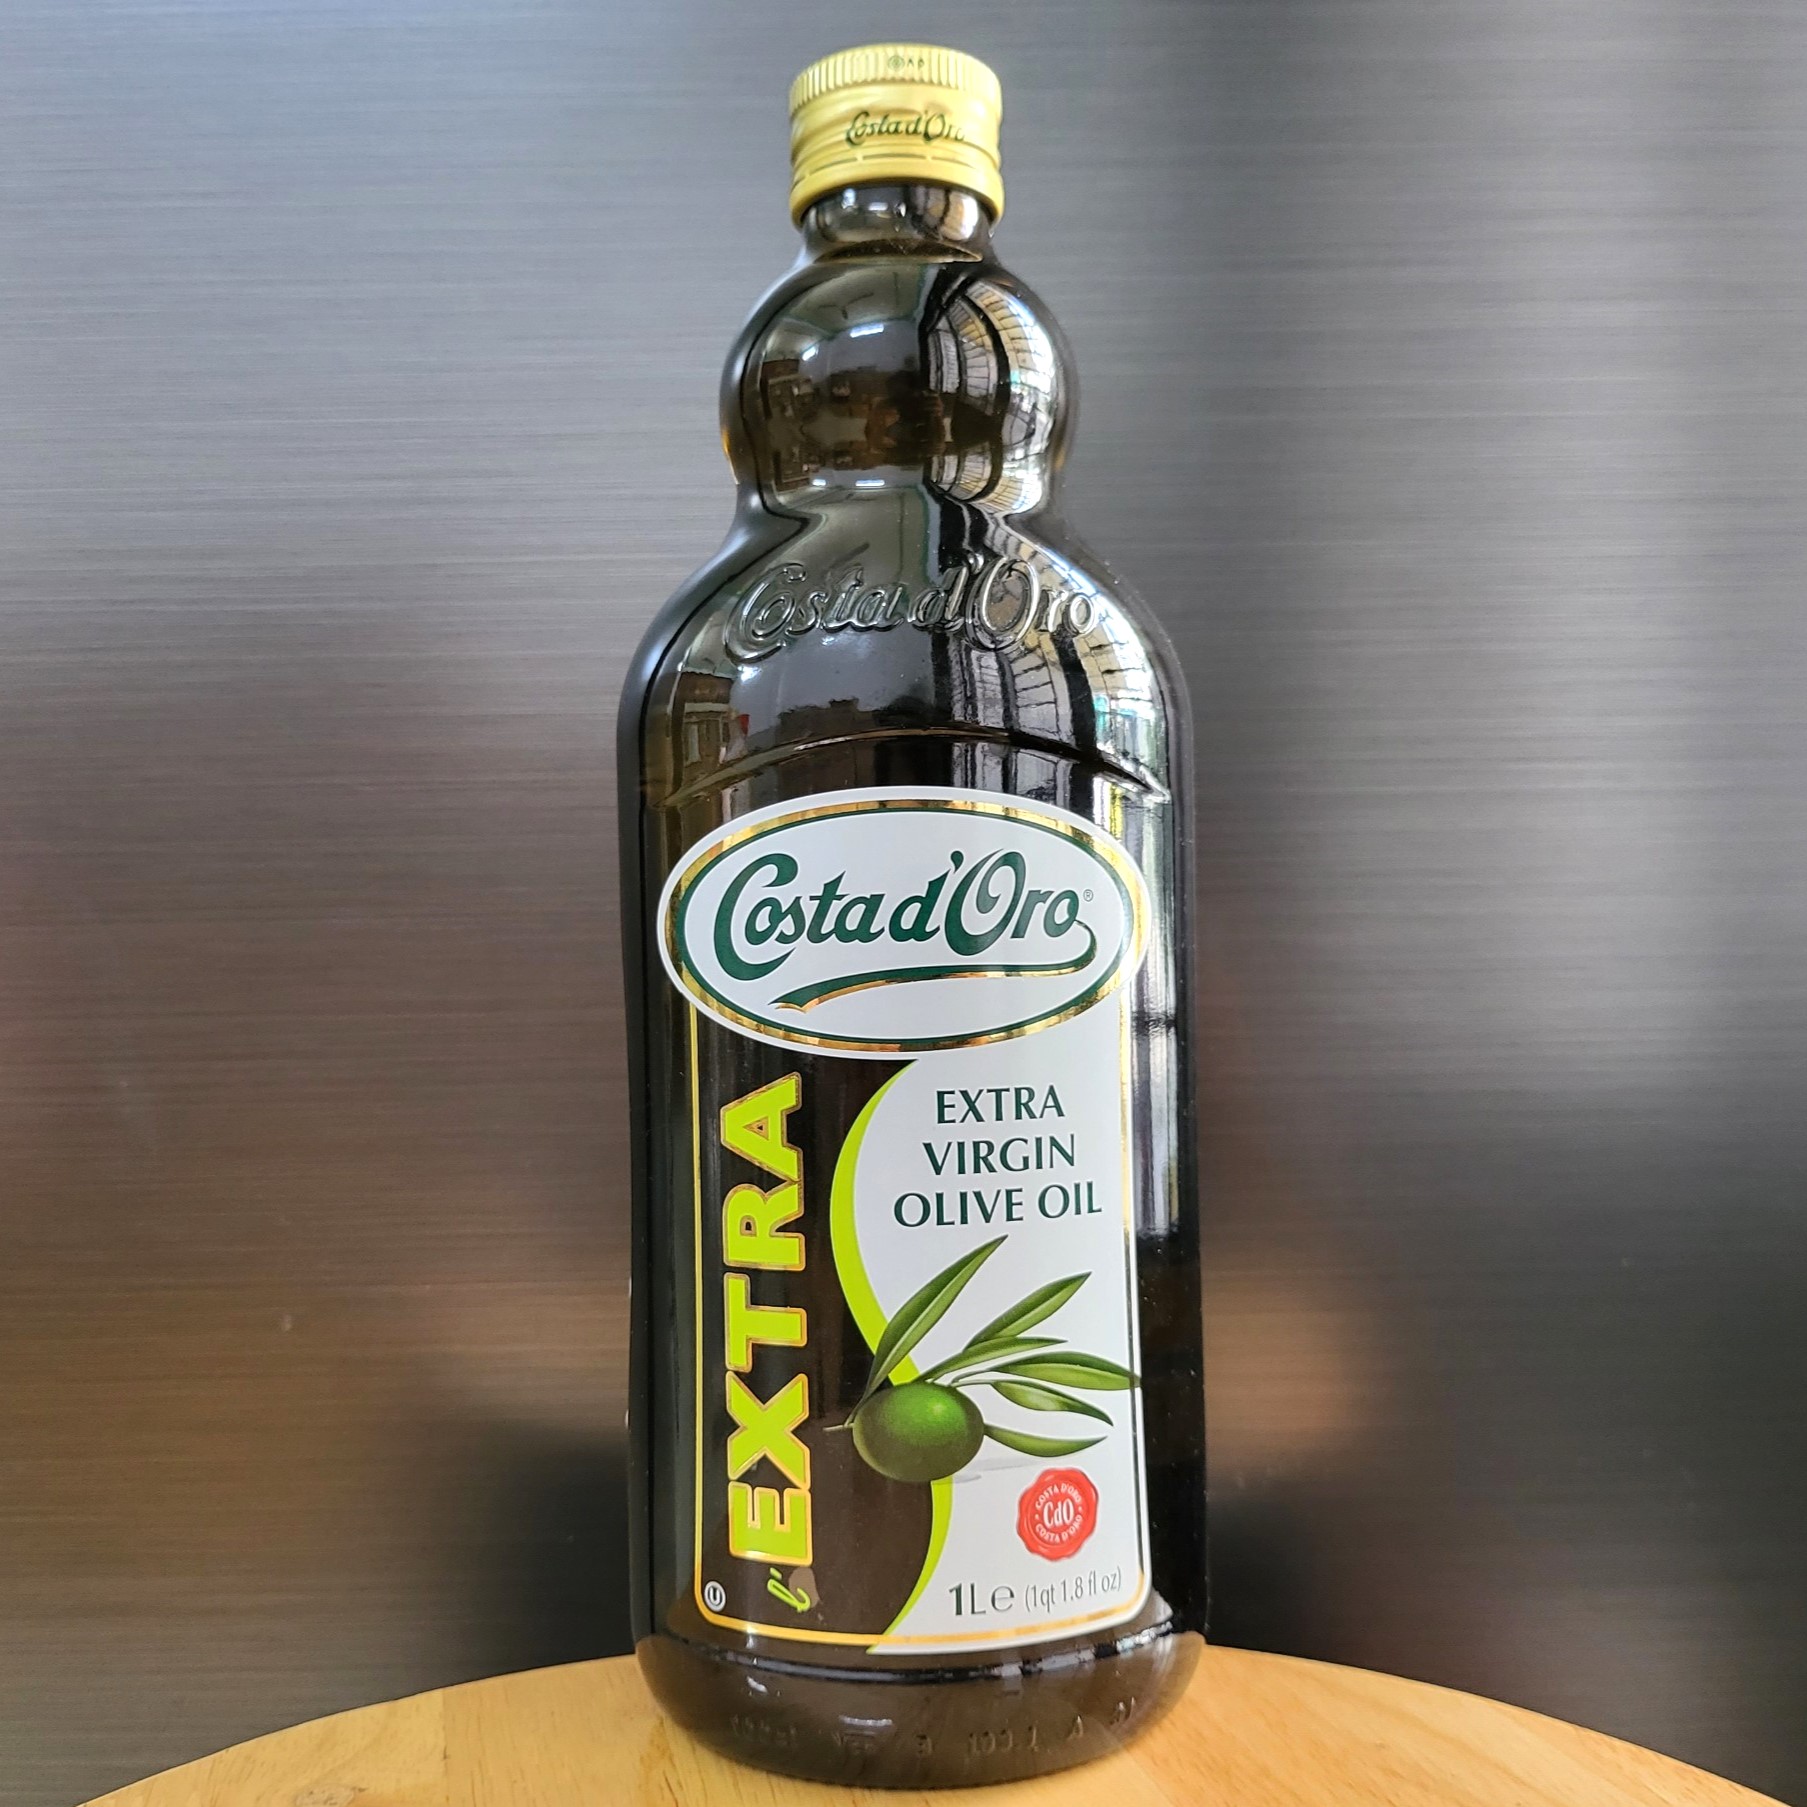 COSTA D ORO Chai EXV 1 L DẦU Ô LIU NGUYÊN CHẤT Ý Extra Virgin Olive Oil